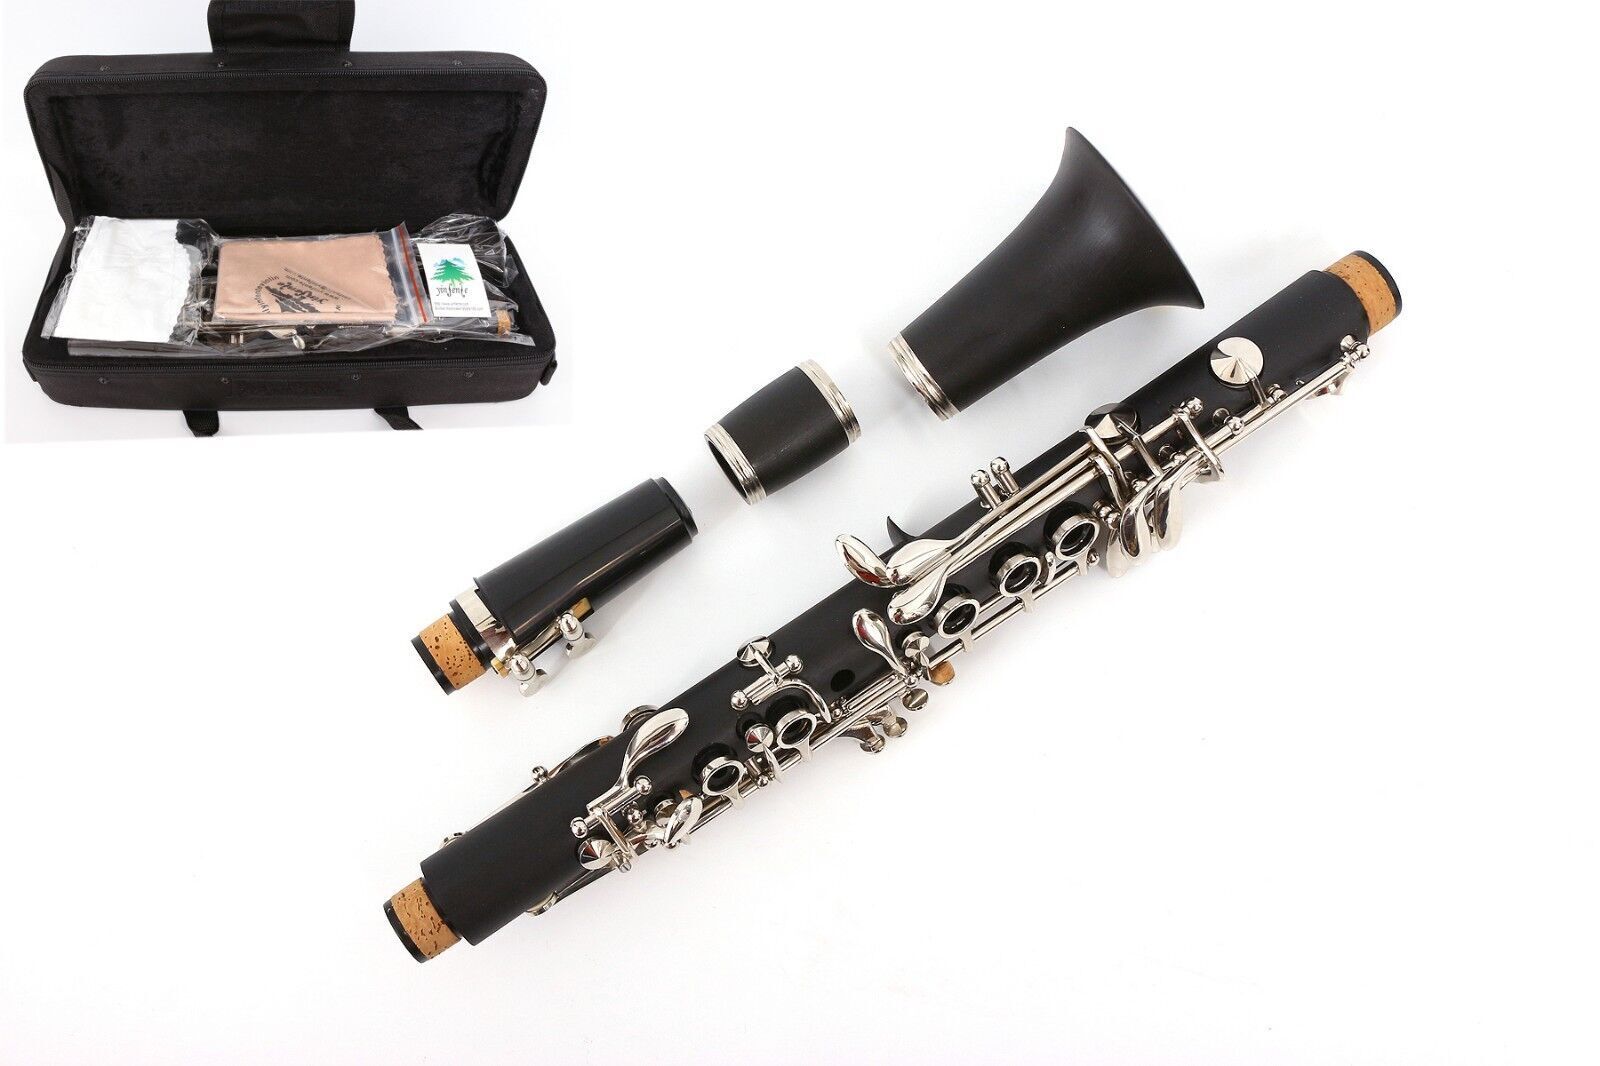 Eb Key E flat Clarinet Ebonite Body Professional Clarinet Good Sound with Case